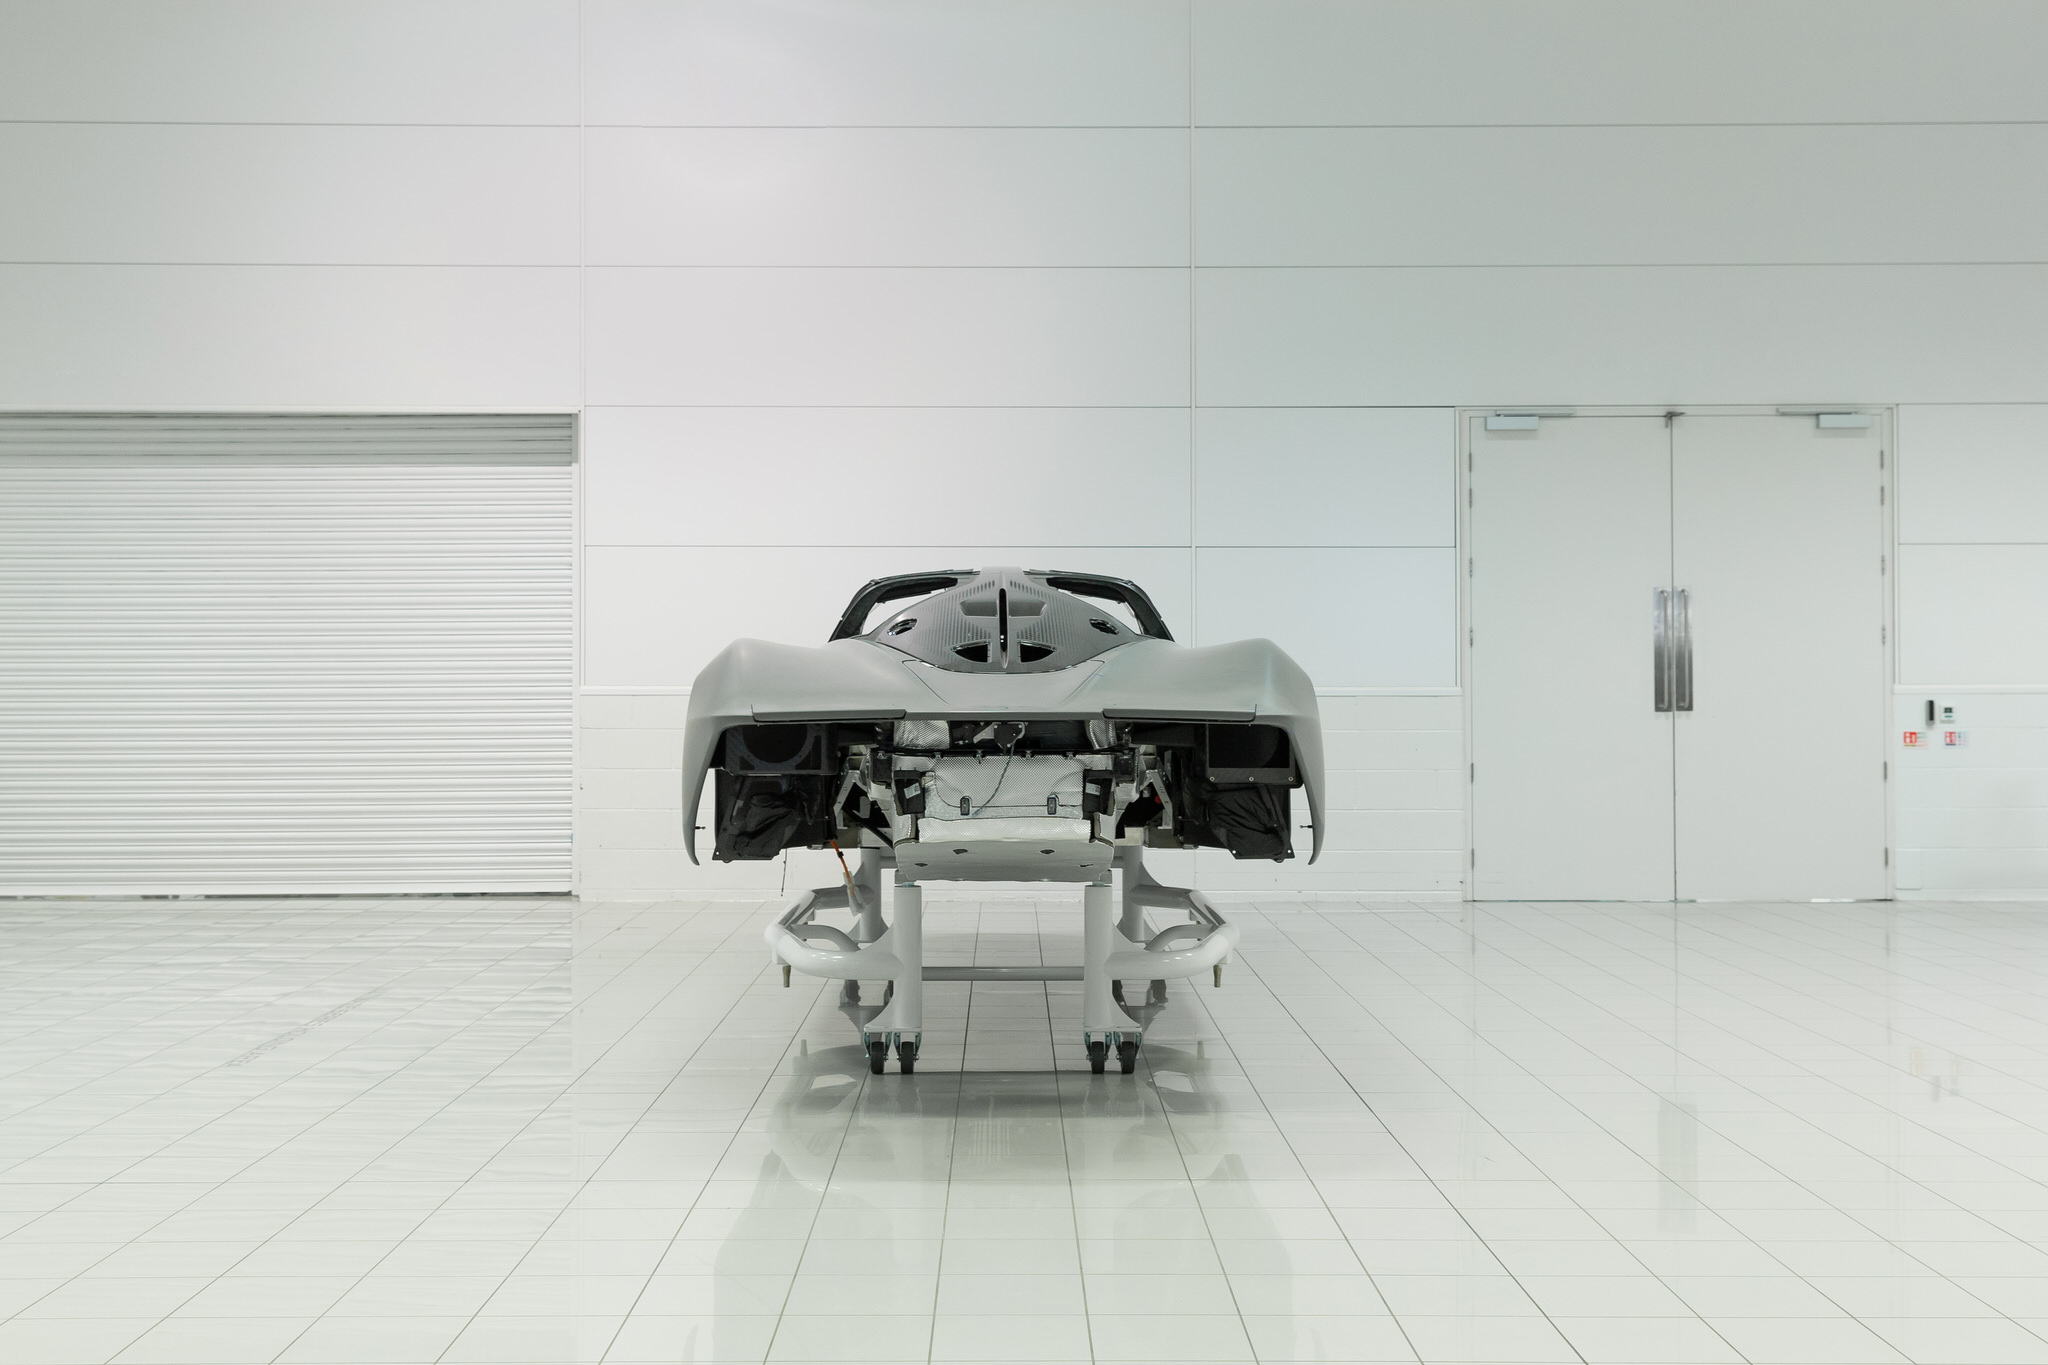 McLaren Speedtail đạt vận tốc 403 km/h tới tận 30 lần tại Trung tâm Vũ trụ Kennedy